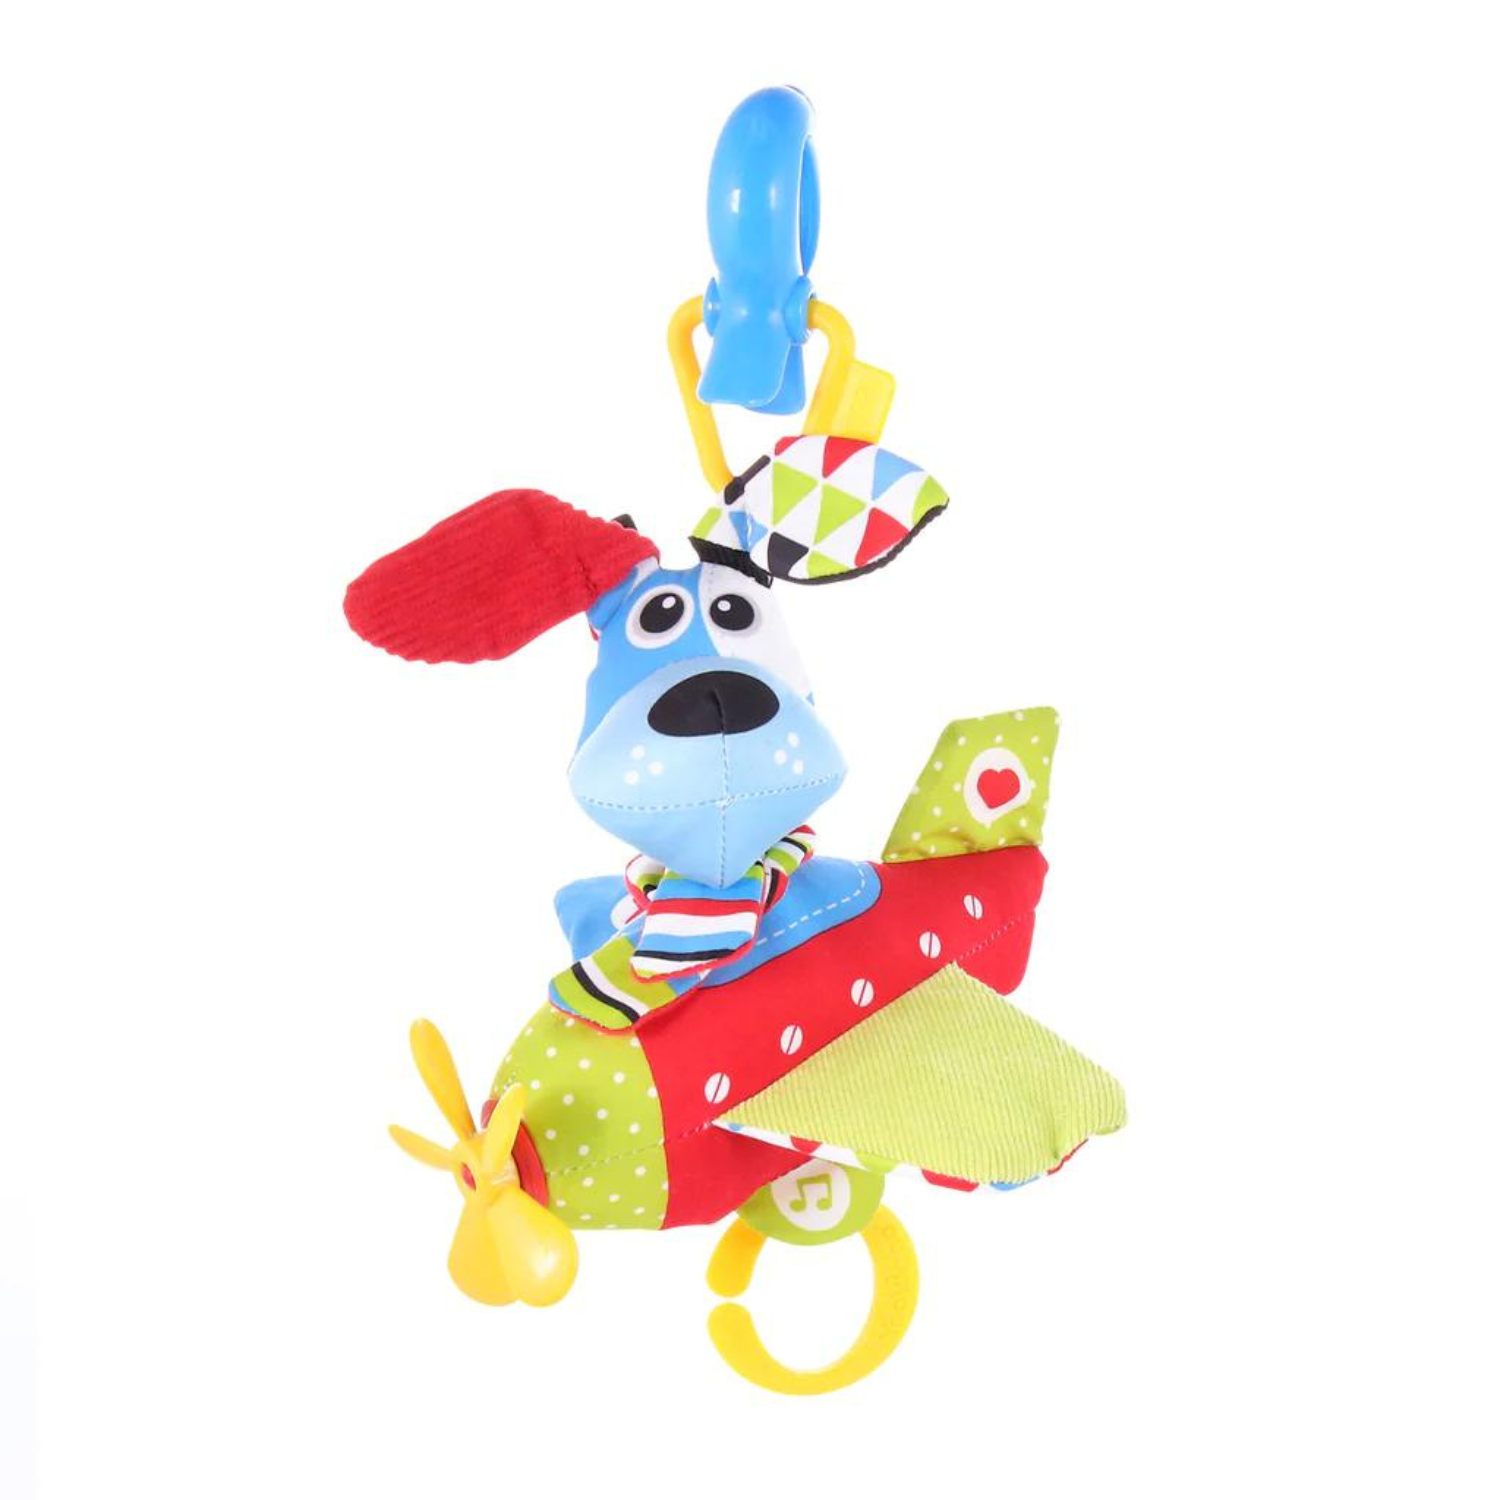 Yookidoo - Tap ‘N' Play Musical Plane - Dog - Age: +0M - +12M